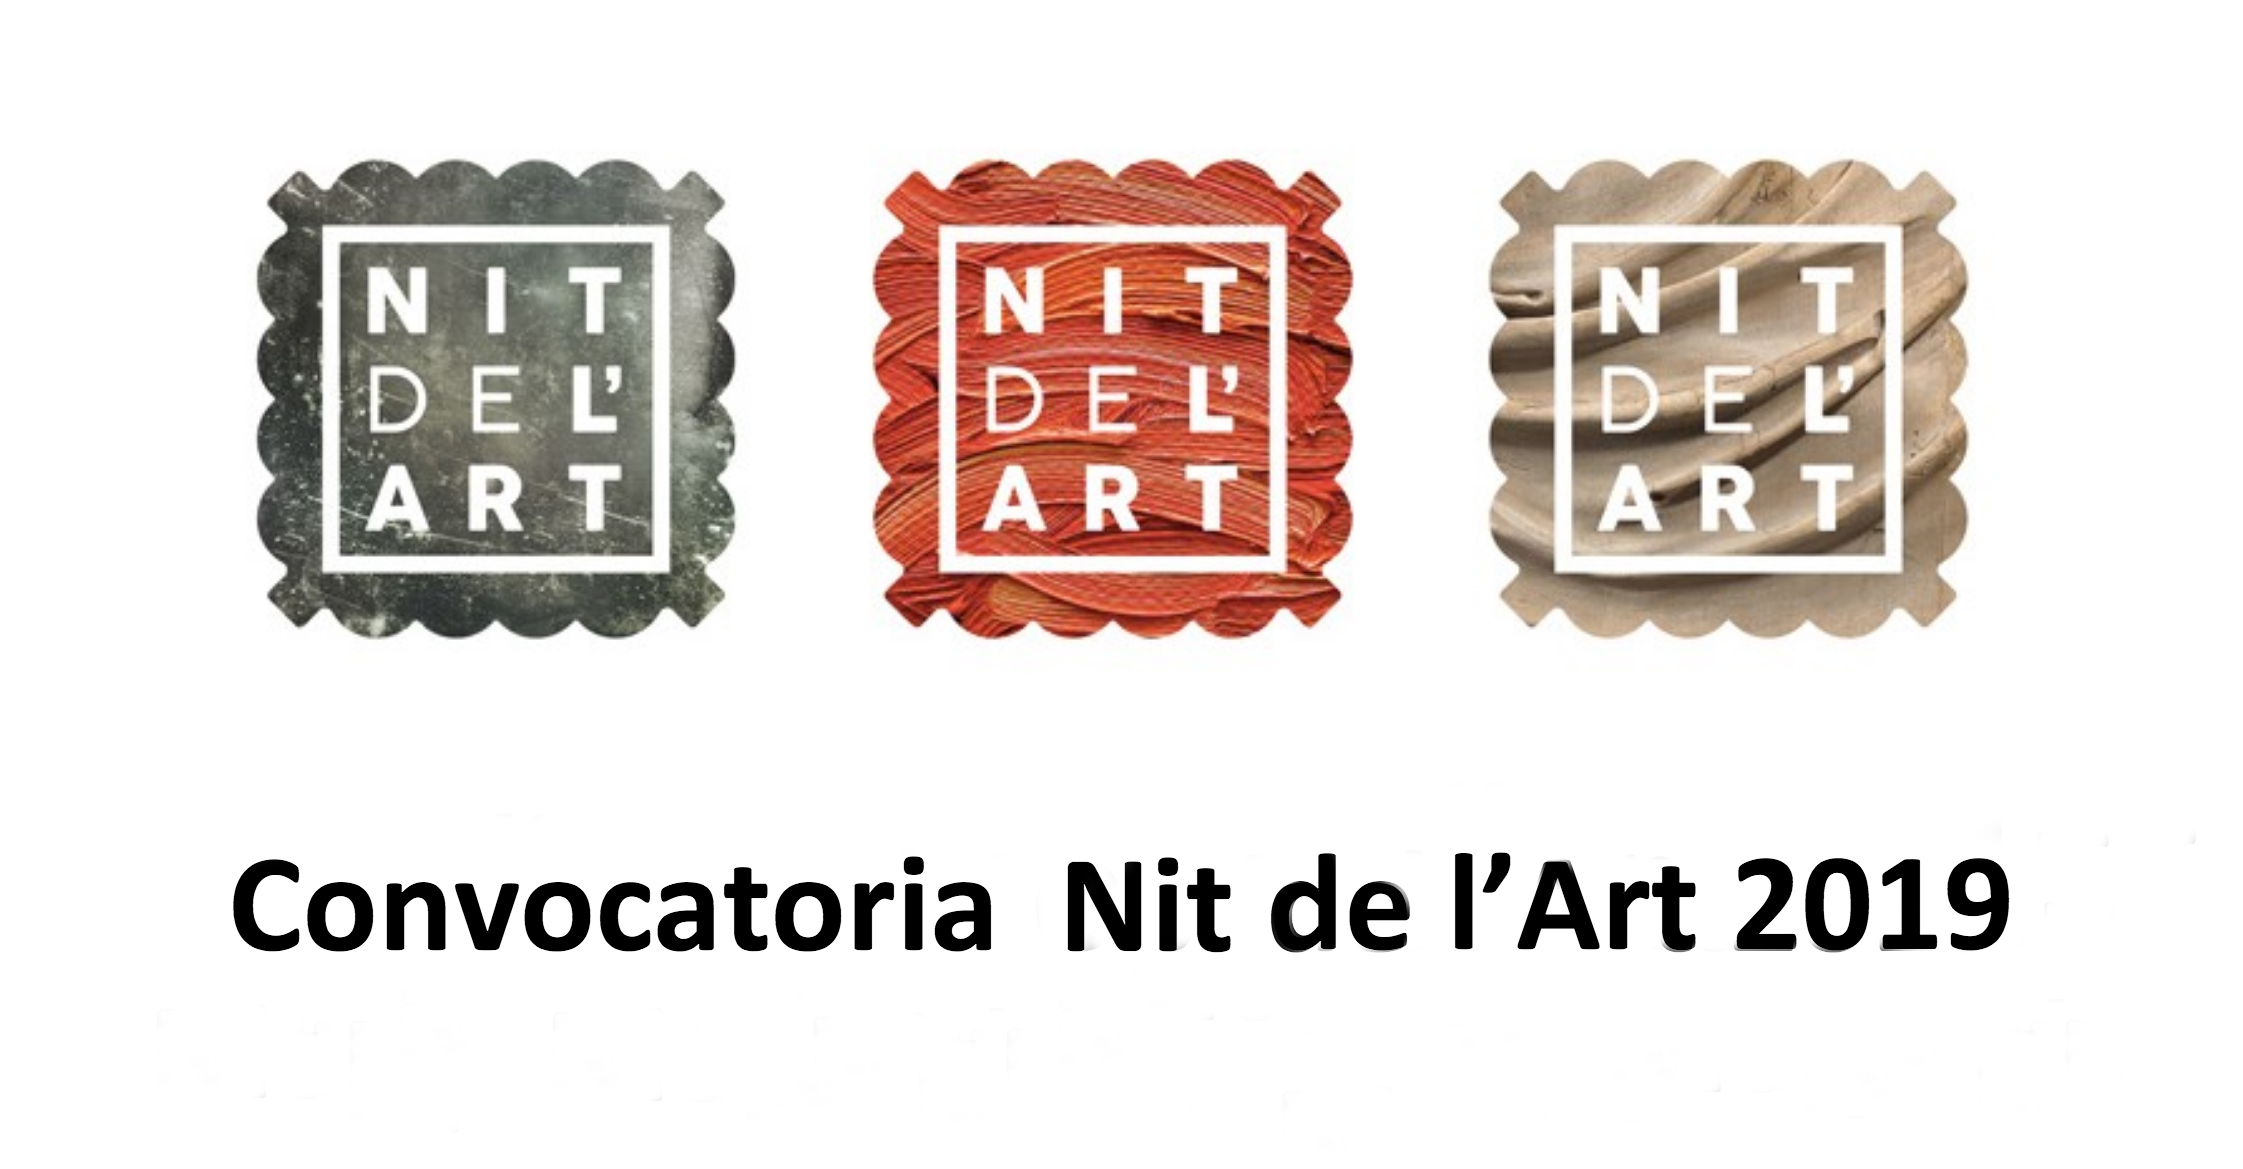 La Concejalía de Cultura de Altea lanza la convocatoria de proyectos para participar enla III edición de la Nit de l’Art